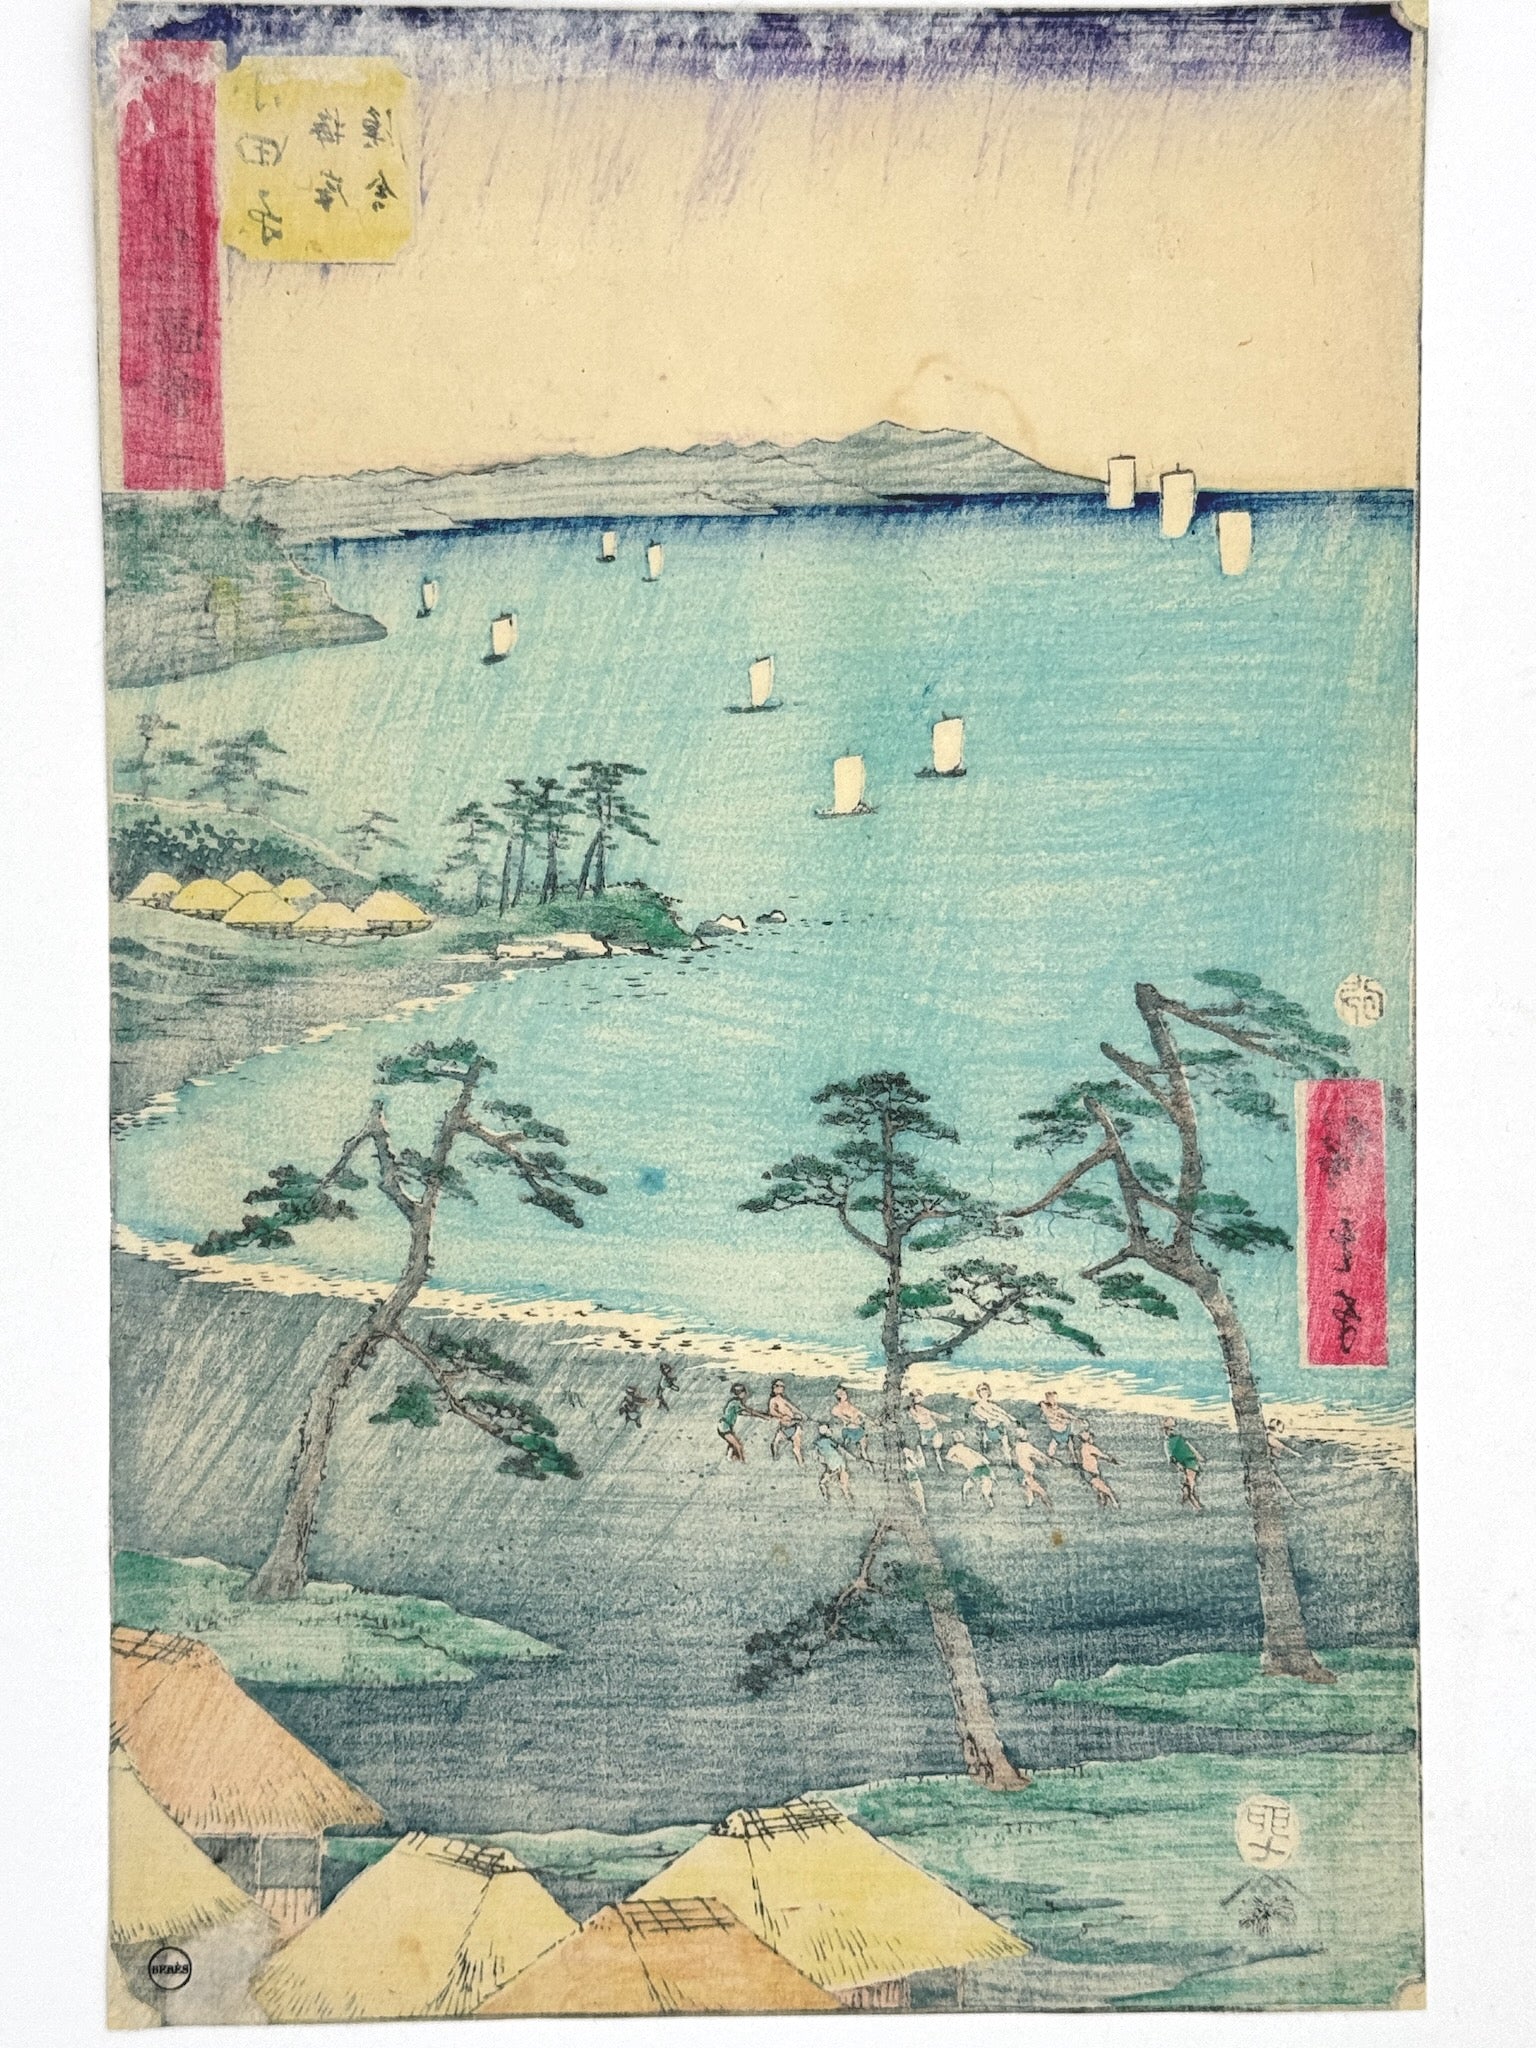 Estampe Japonaise de Hiroshige | Le Tokaido vertical | Odawara paysage de mer et pecheurs dos de l'estampe